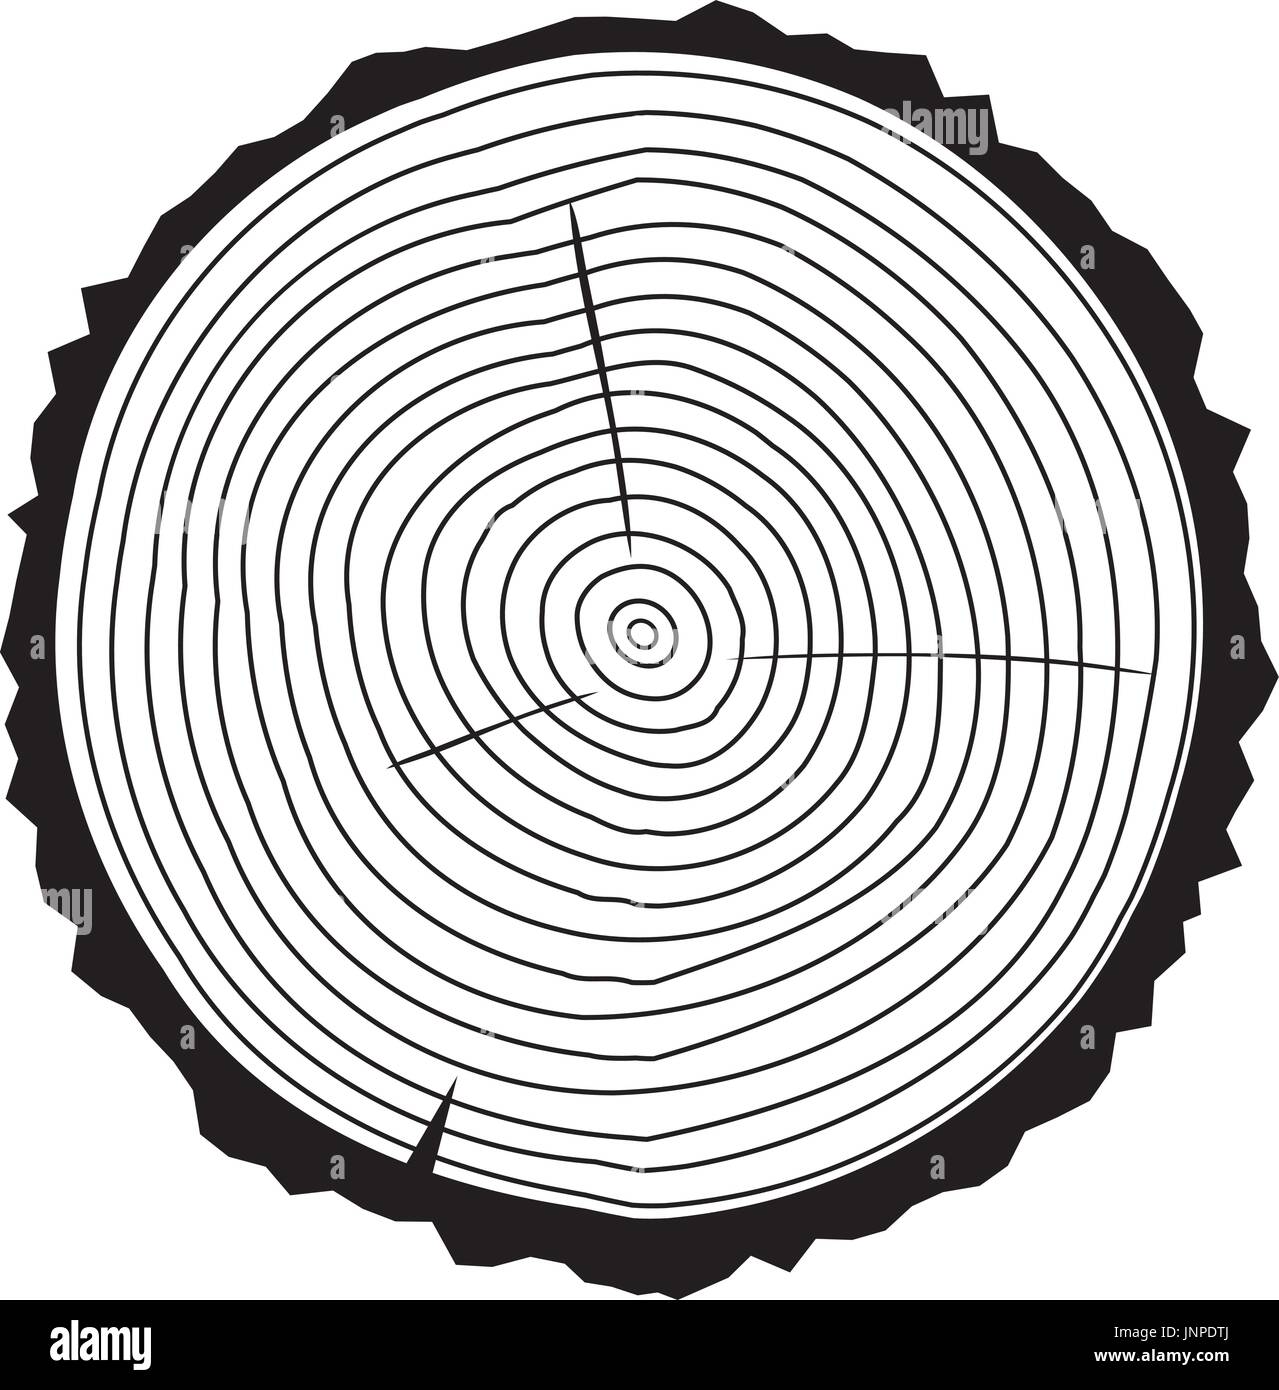 Vektor Illustration Der Baum Ring Hintergrund Und Sageschnitt Baumstamm Schwarze Silhouette Konzeptionelle Grafik Stock Vektorgrafik Alamy